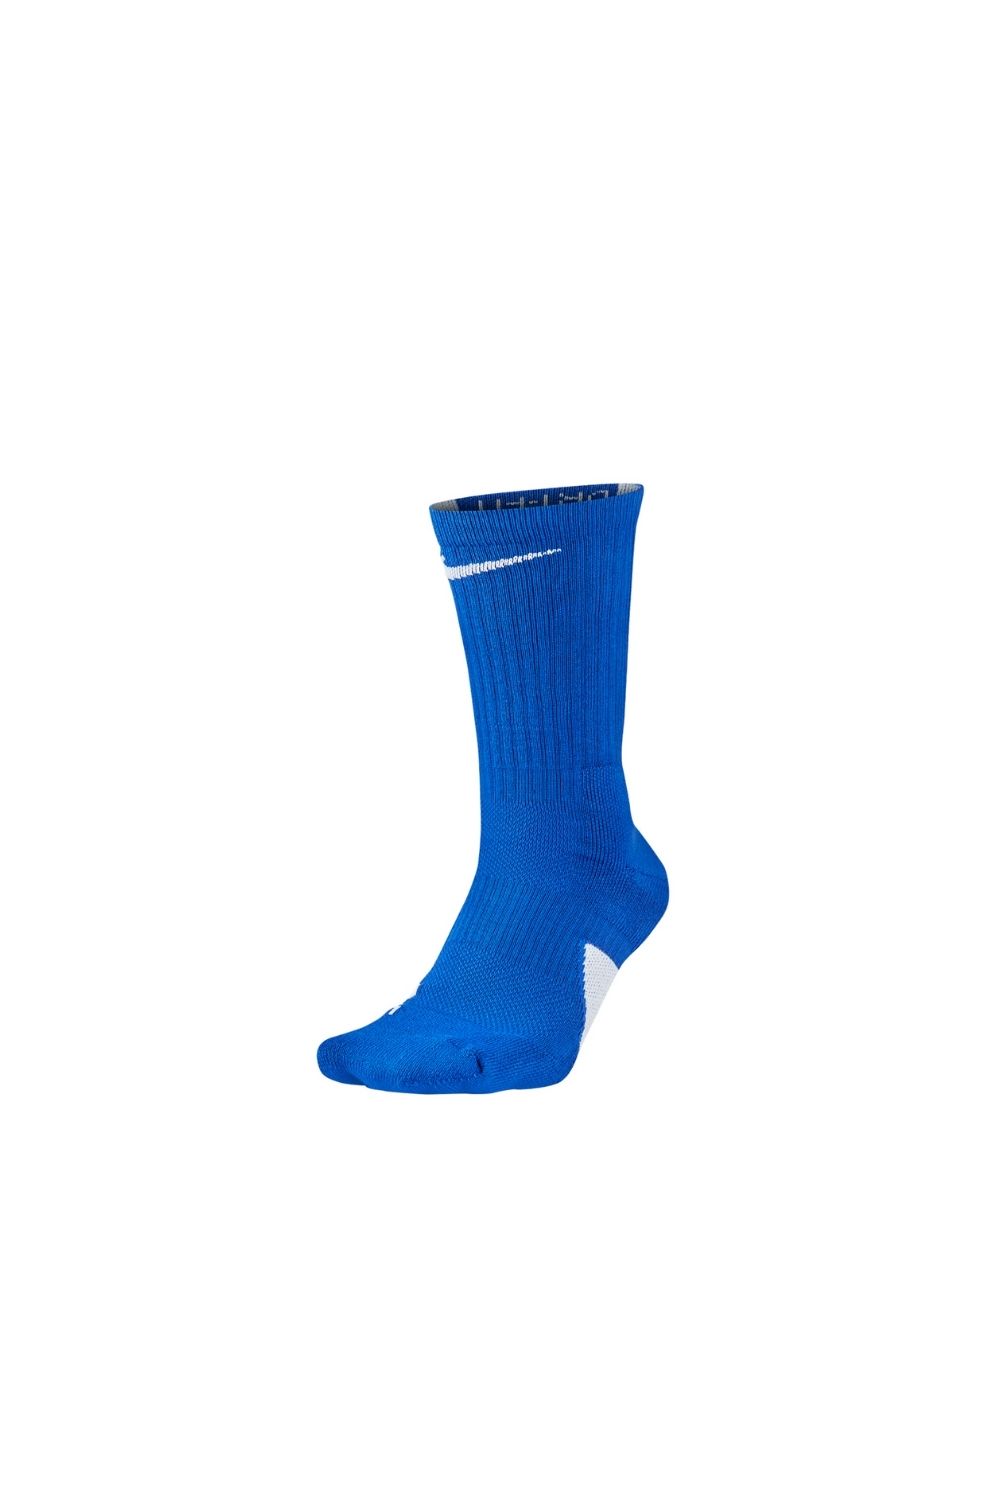 Ανδρικά/Αξεσουάρ/Κάλτσες NIKE - Unisex κάλτσες μπάσκετ Nike Elite Basketball Crew μπλε